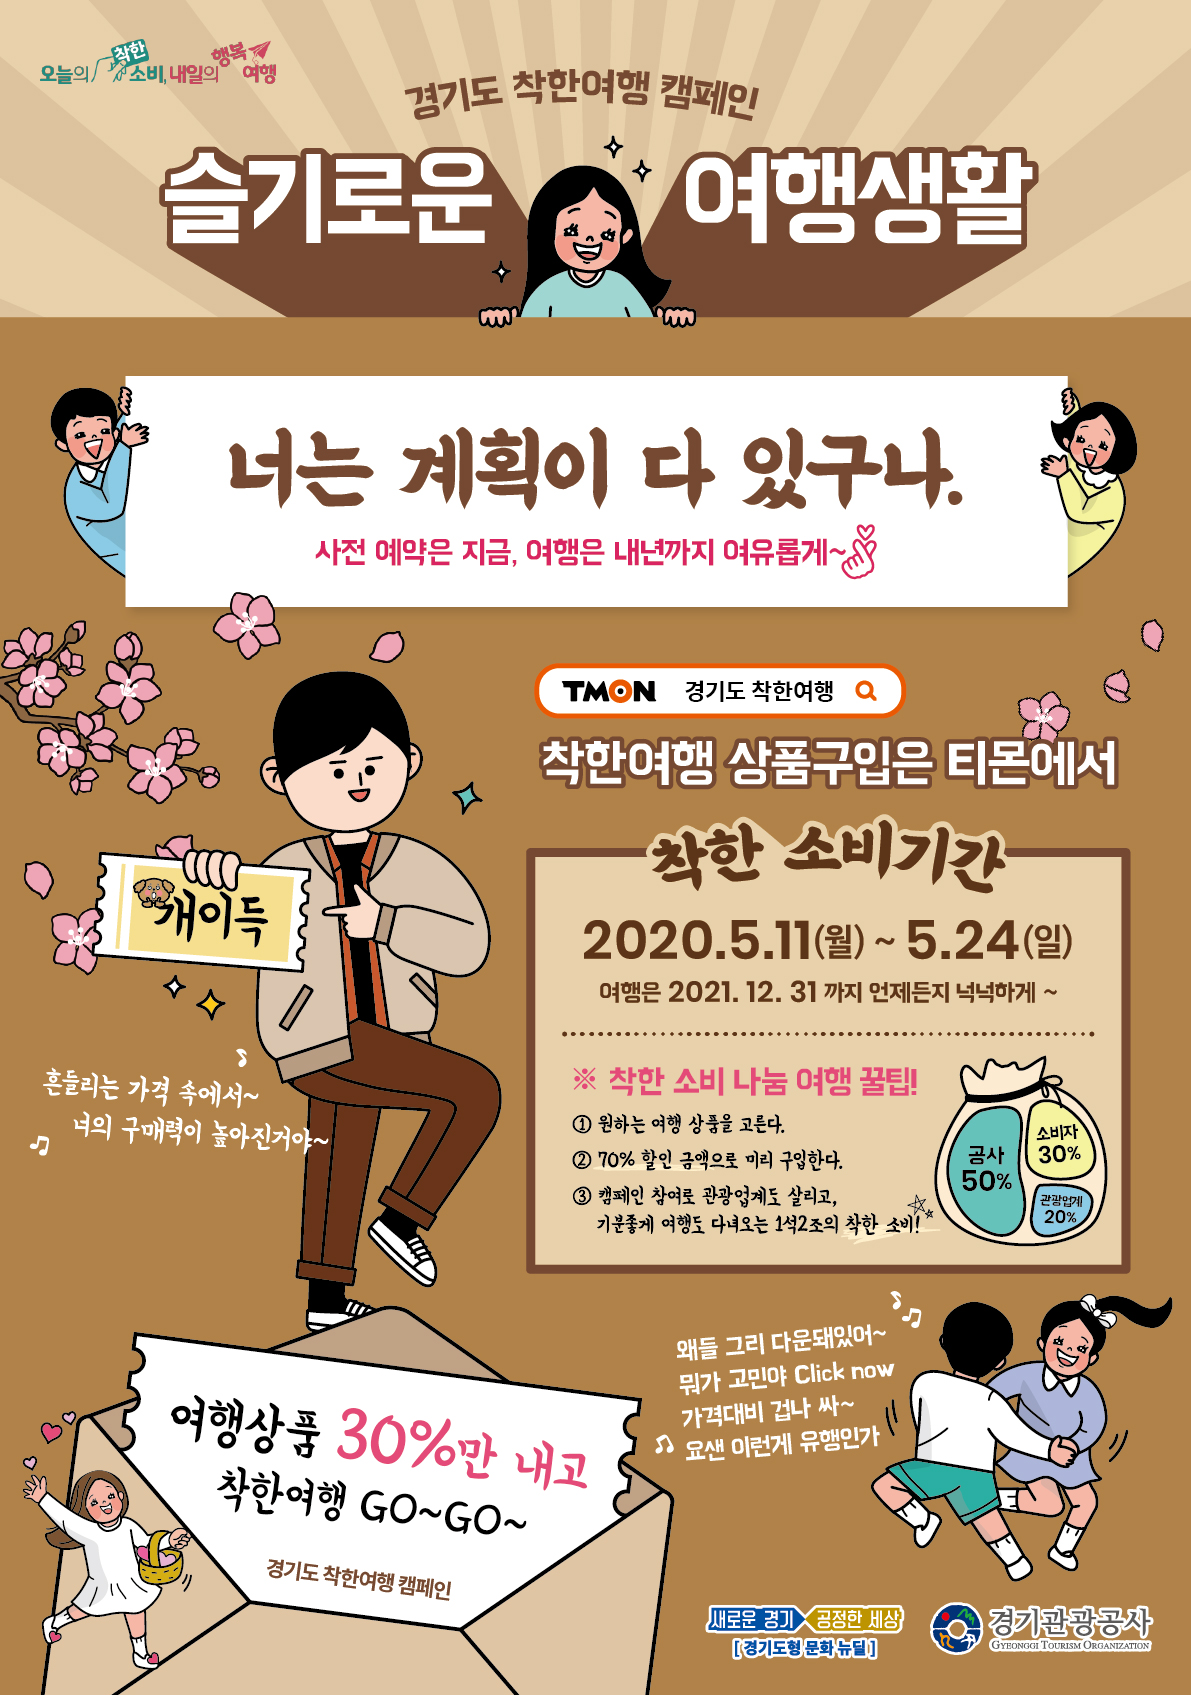 경기도 착한여행 캠페인 슬기로운 여행생활 광고 포스터 상세 설명은 하단 참조